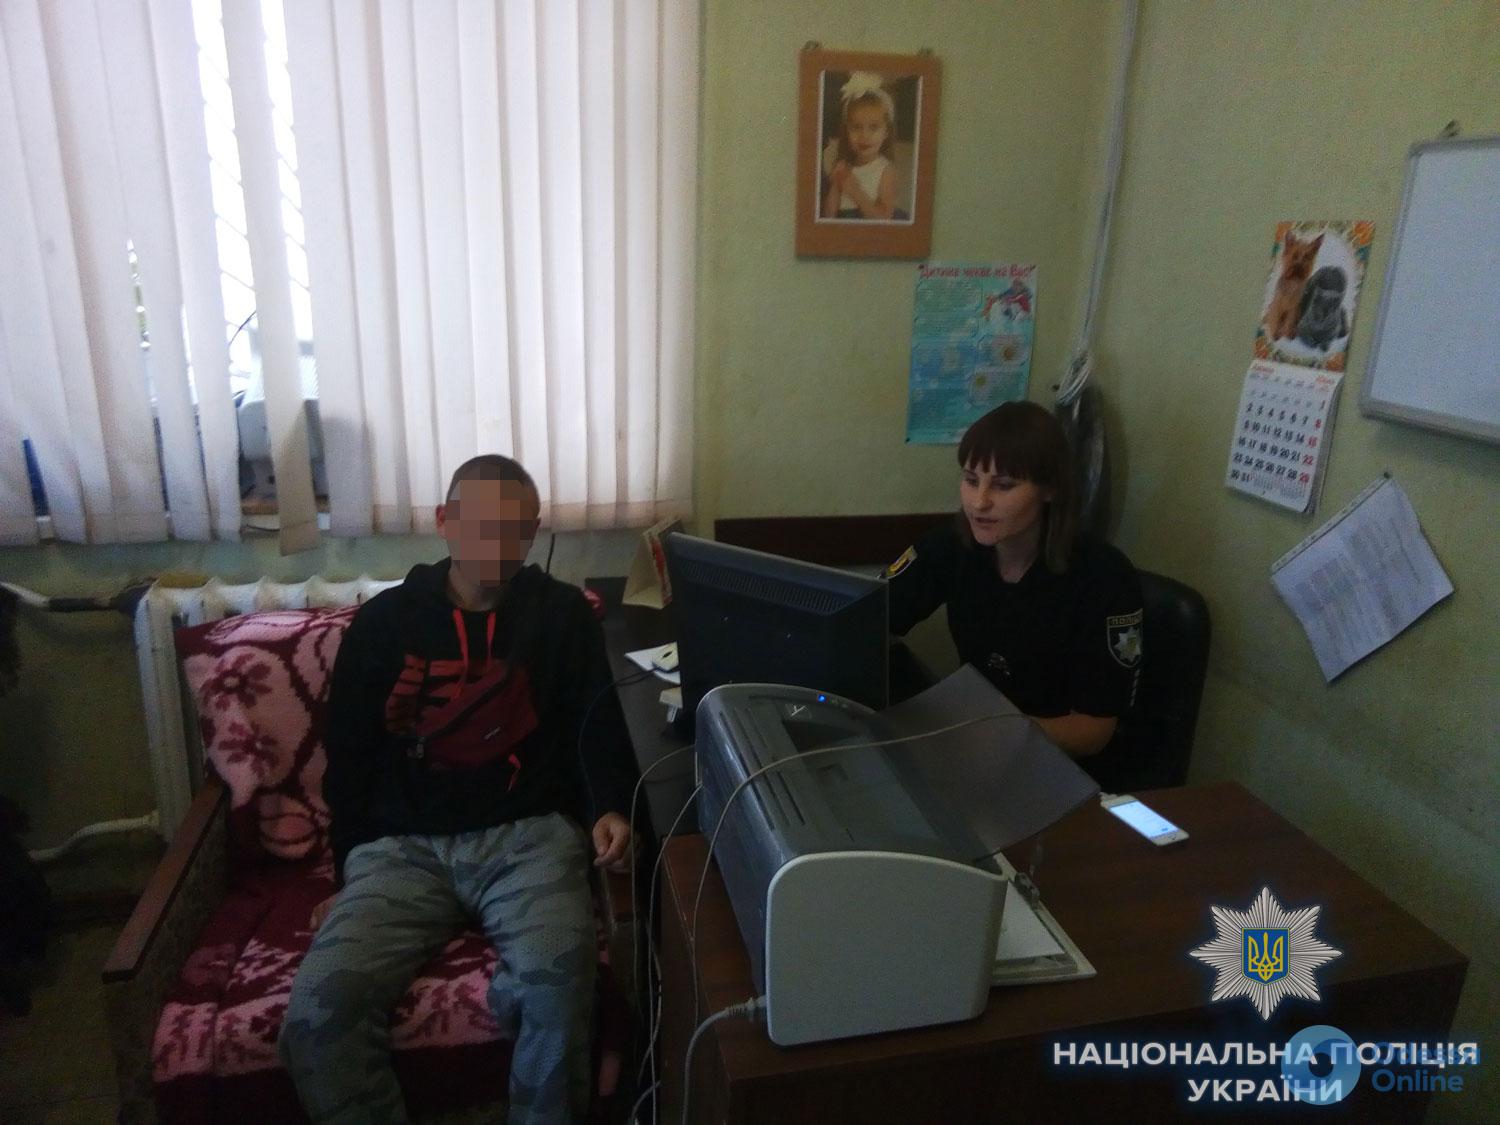 Ушел из дома неделю назад: в Подольске полиция разыскала 17-летнего парня